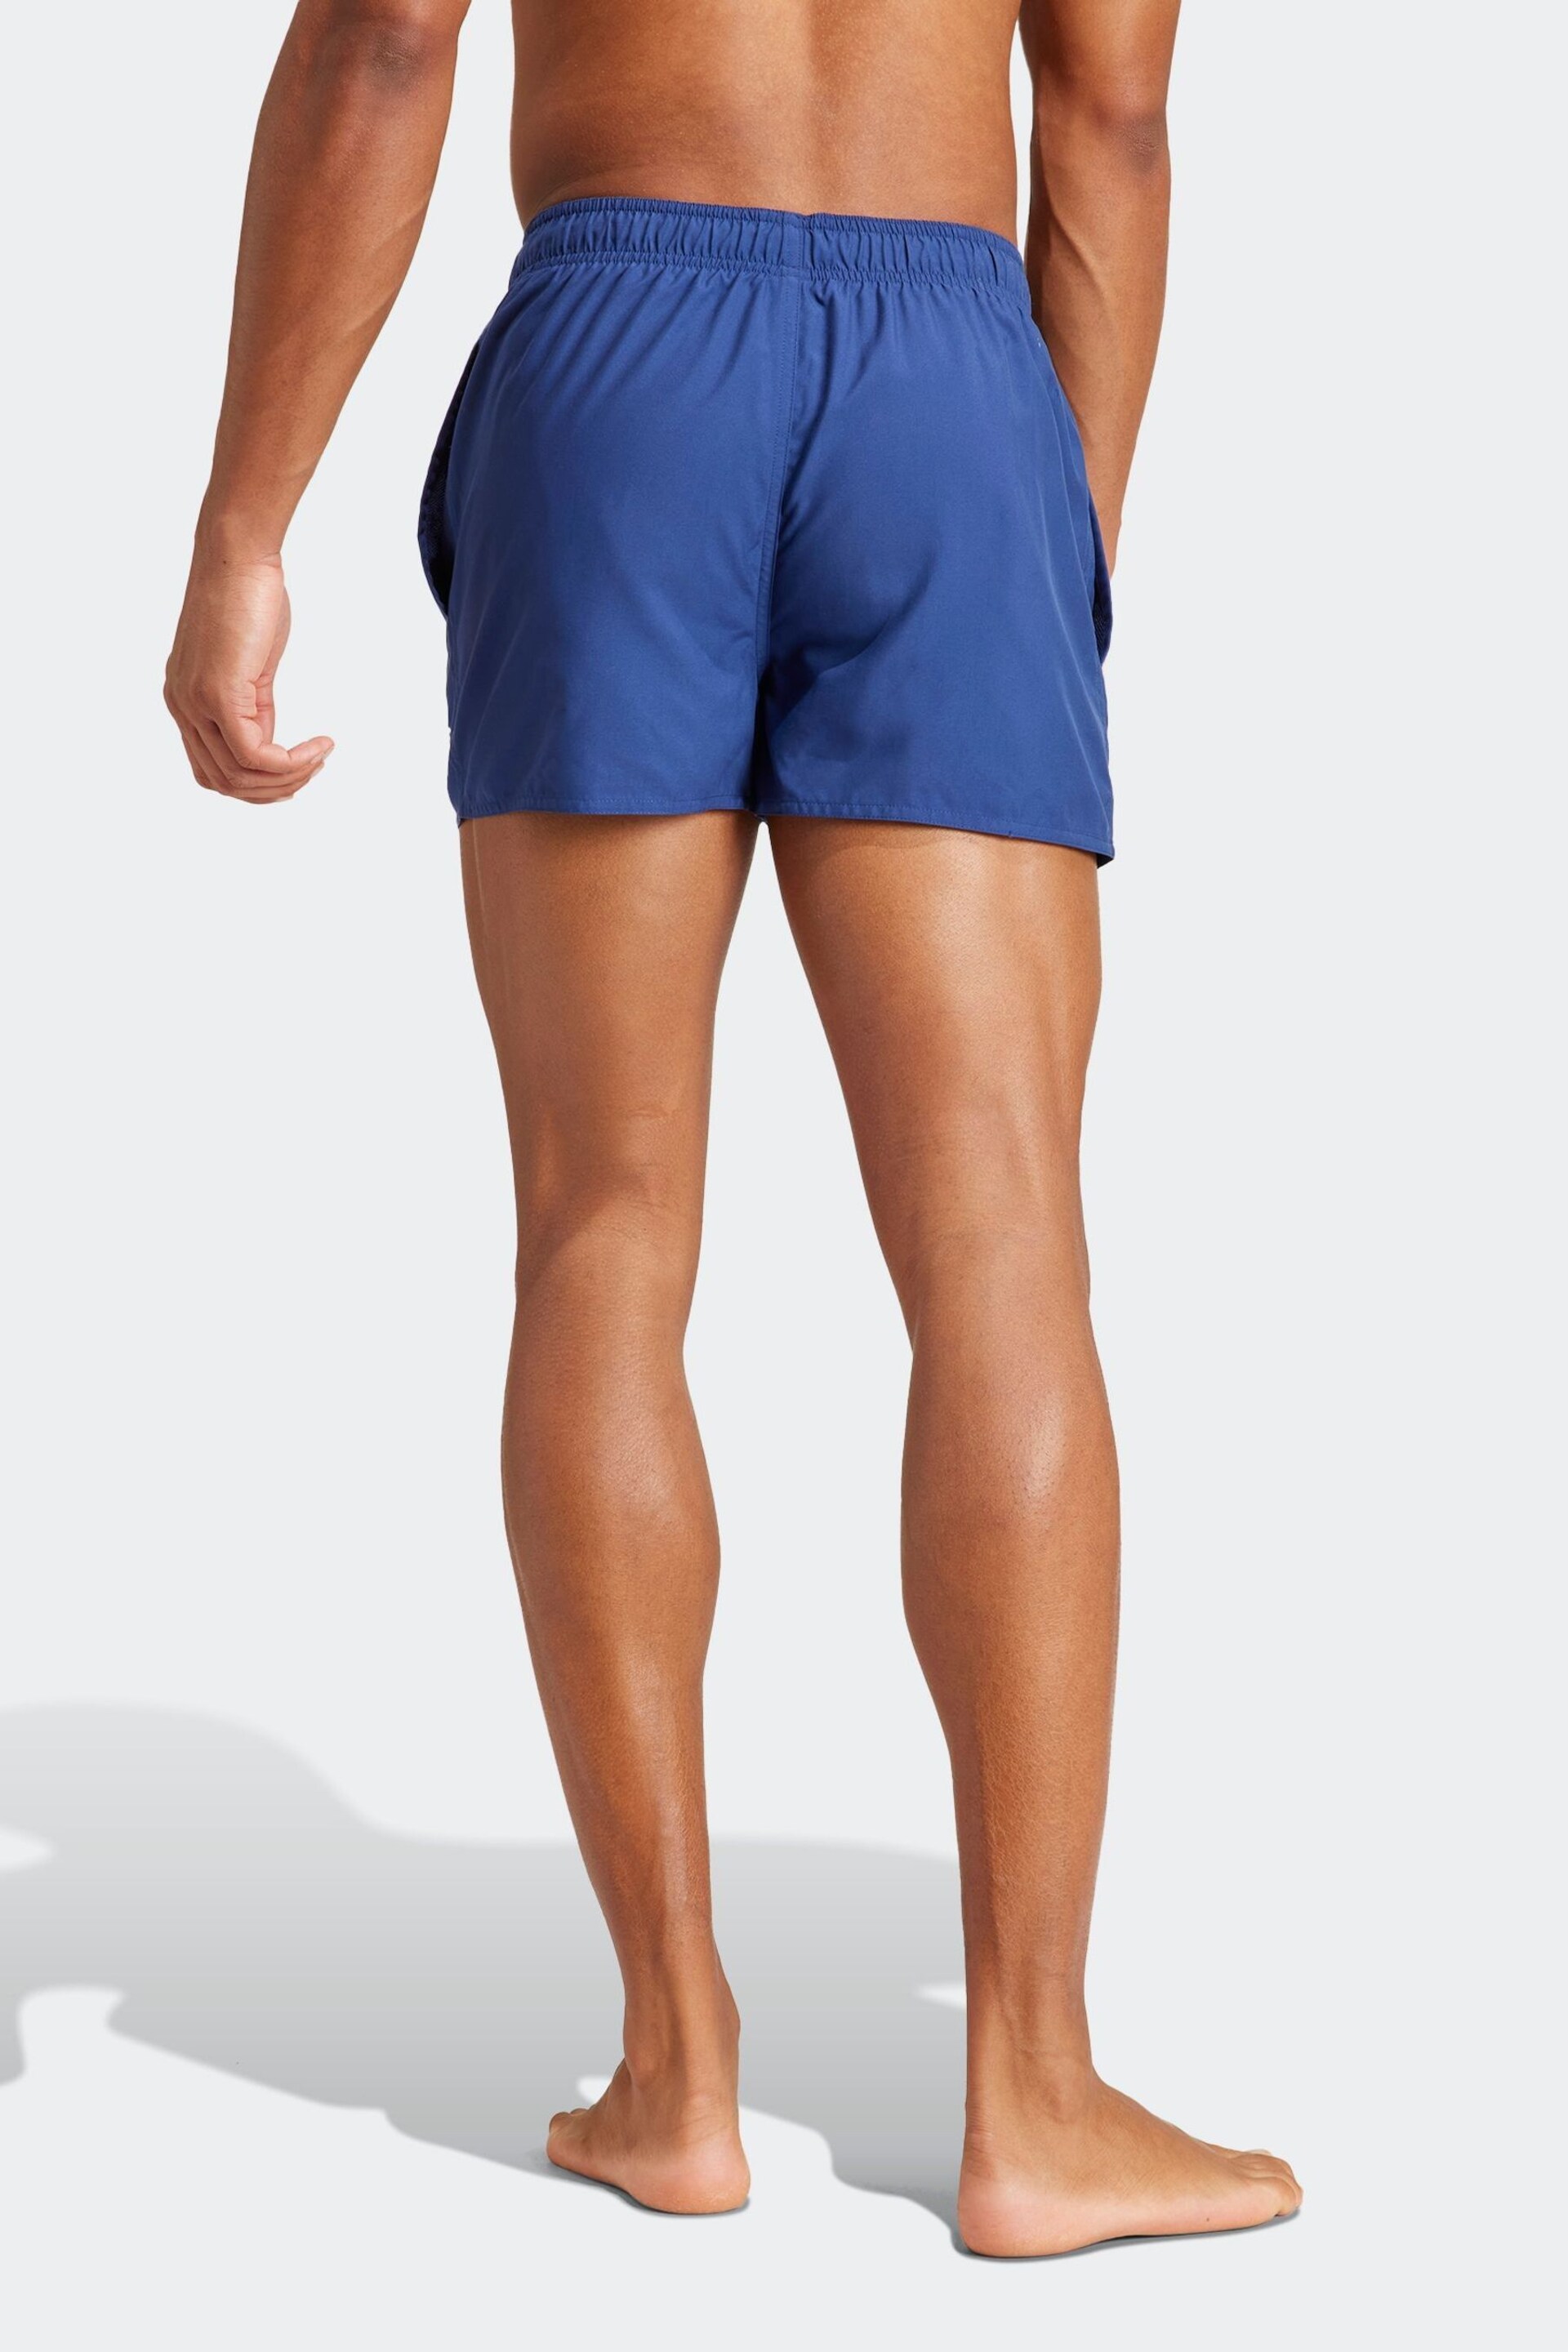 adidas Blue Essentials Logo Clx Shorts - Image 2 of 6